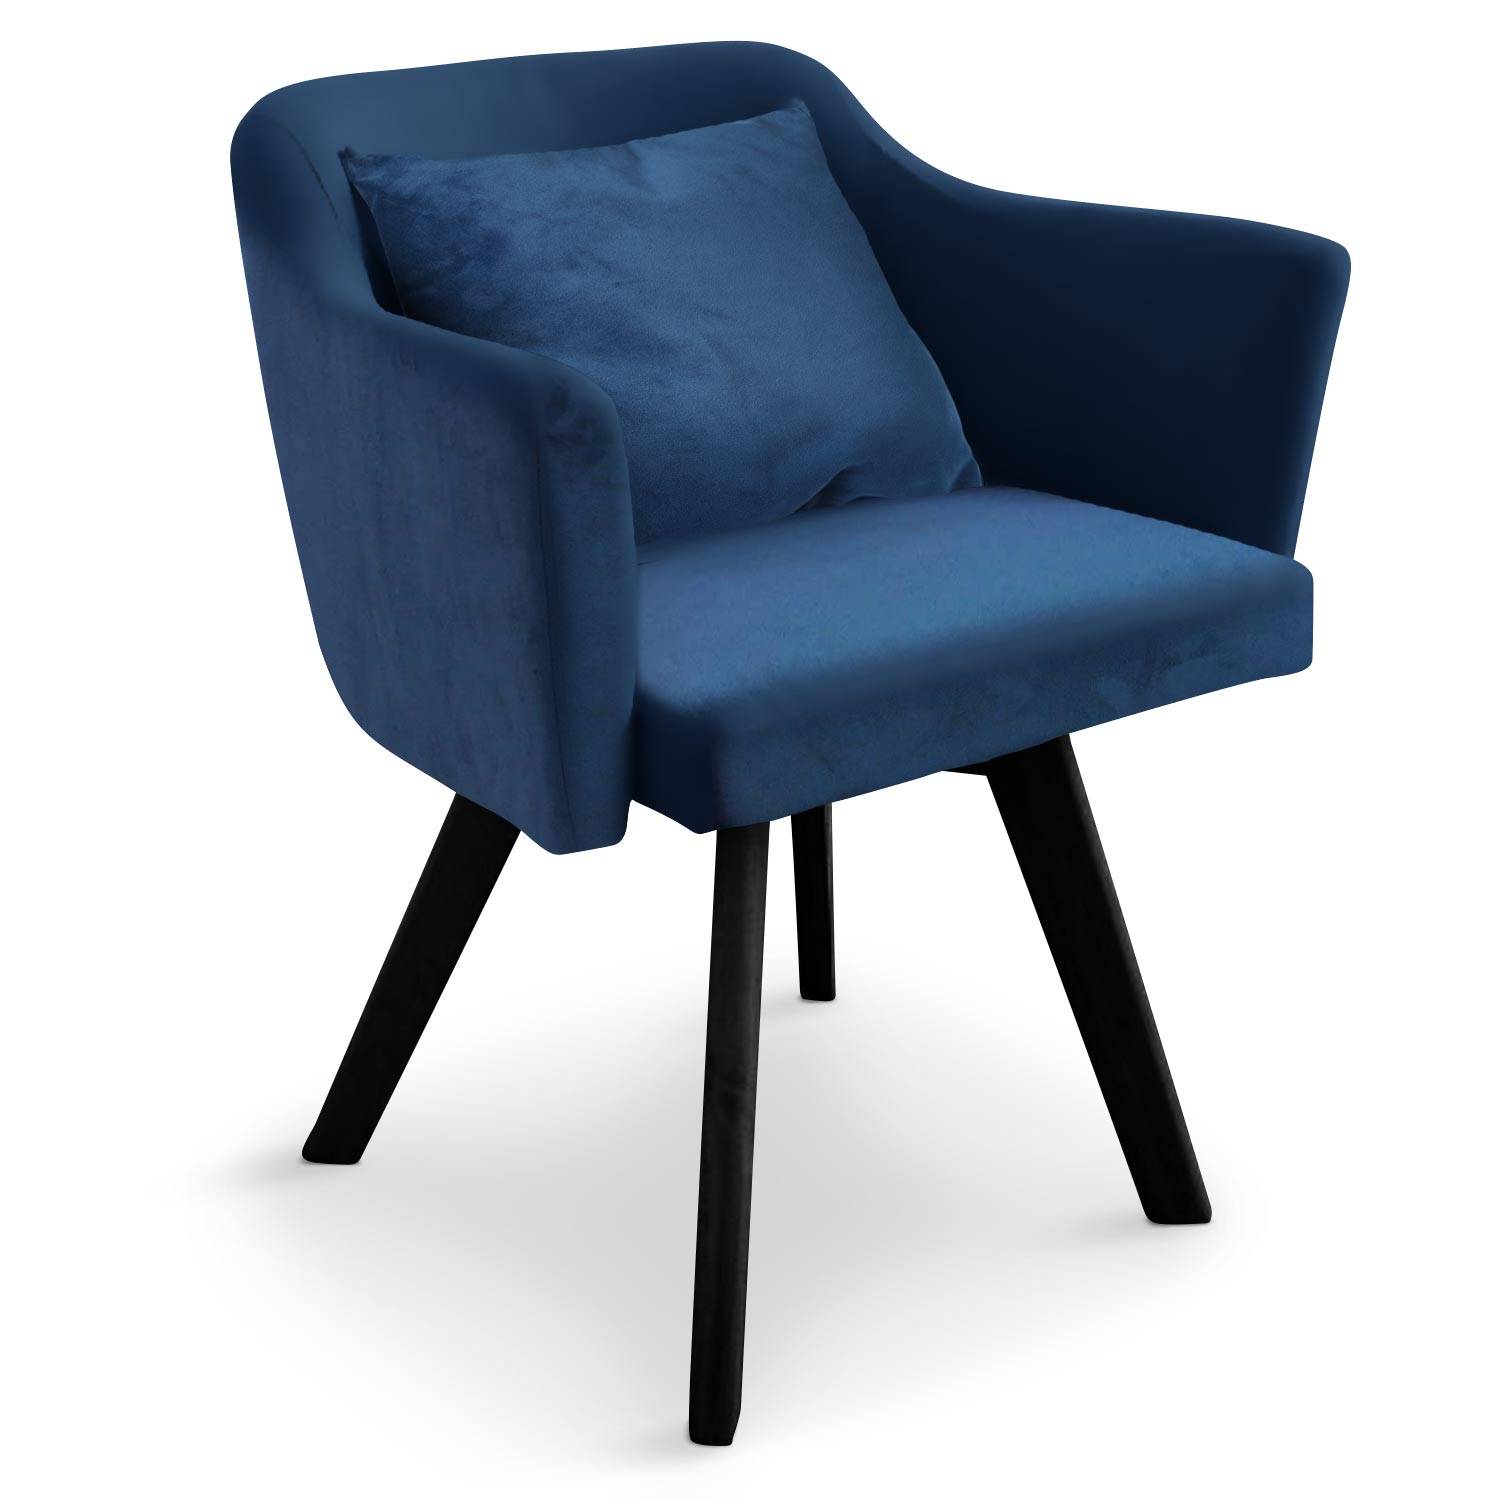 Spanning solo realiteit Scandinavische stoel / fauteuil Dantes blauw fluweel